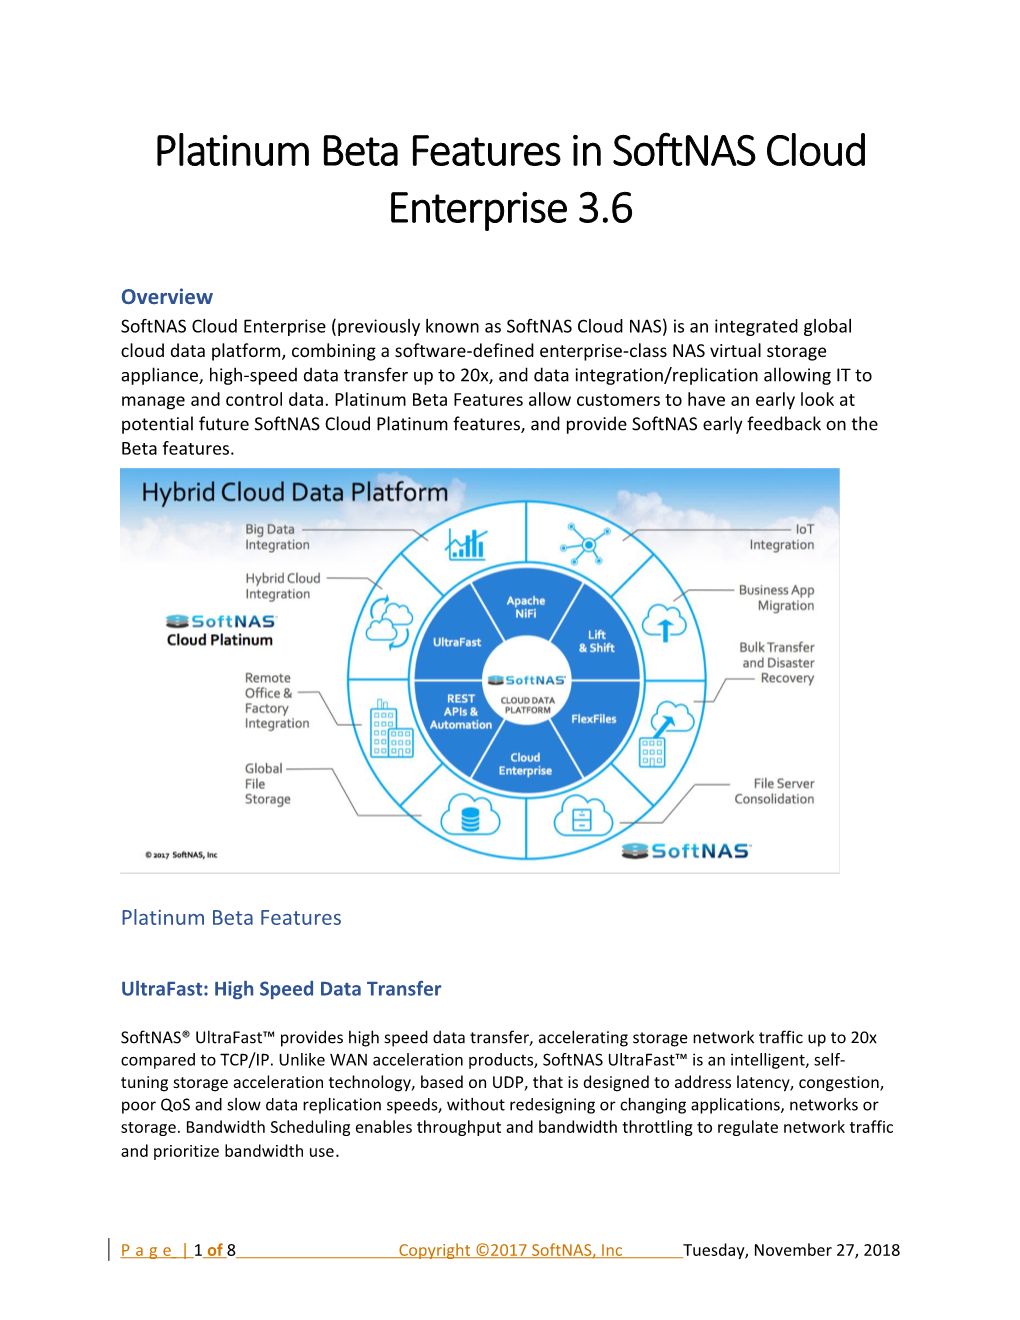 Softnas Cloud Enterprise 3.6 Platinum Beta Features